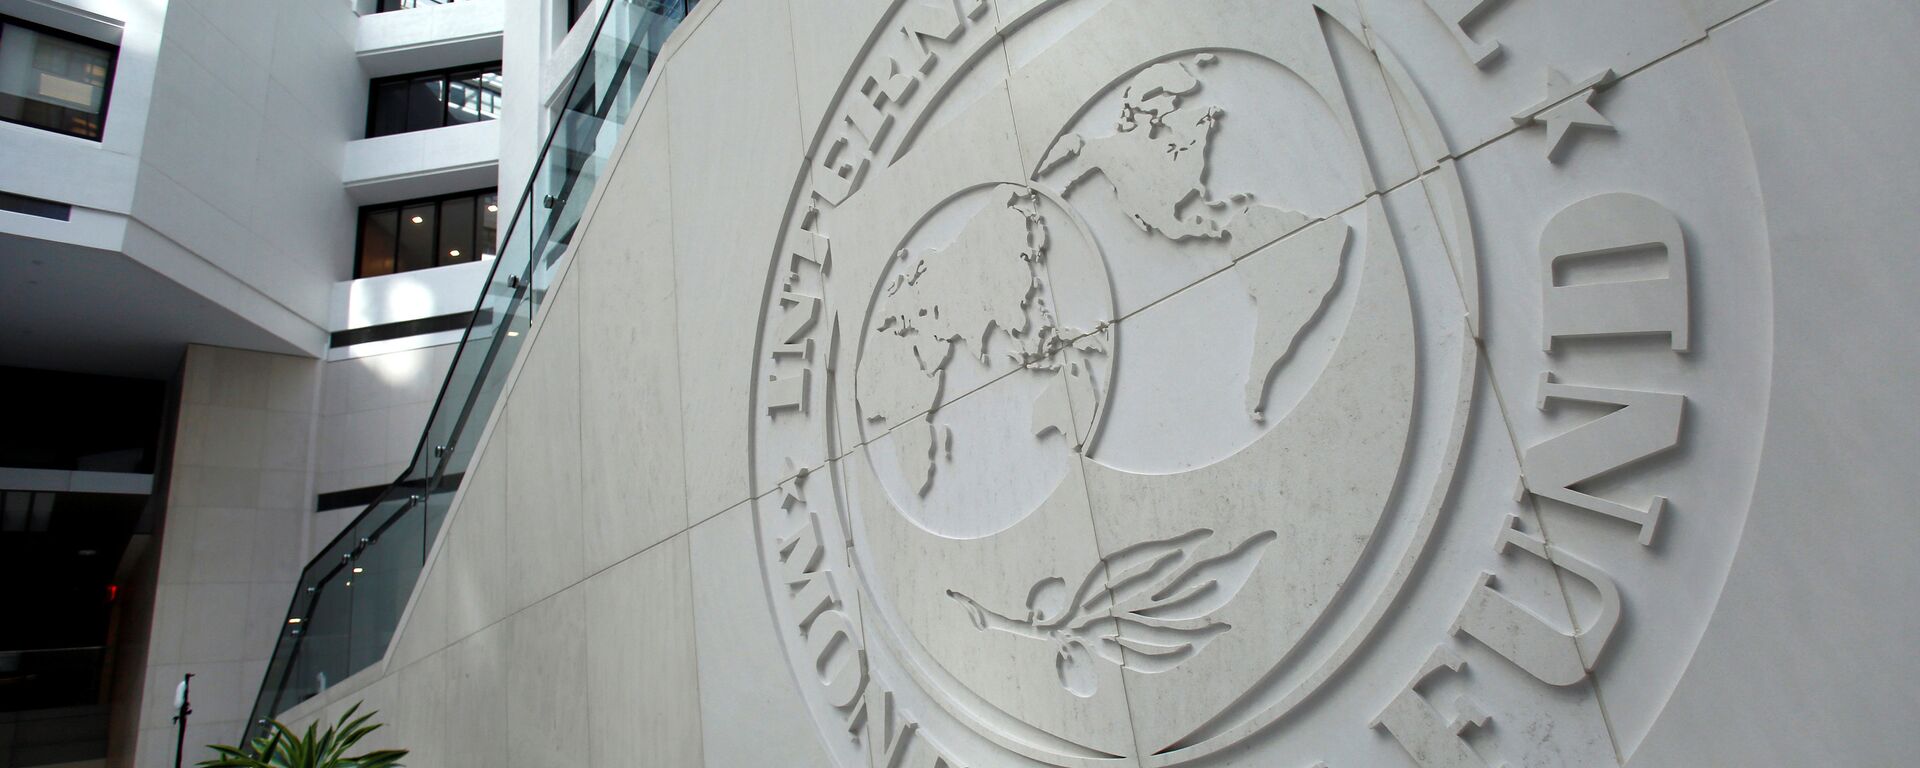 Zgrada Međunarodnog monetarnog fonda u Vašingtonu - Sputnik Srbija, 1920, 18.08.2021